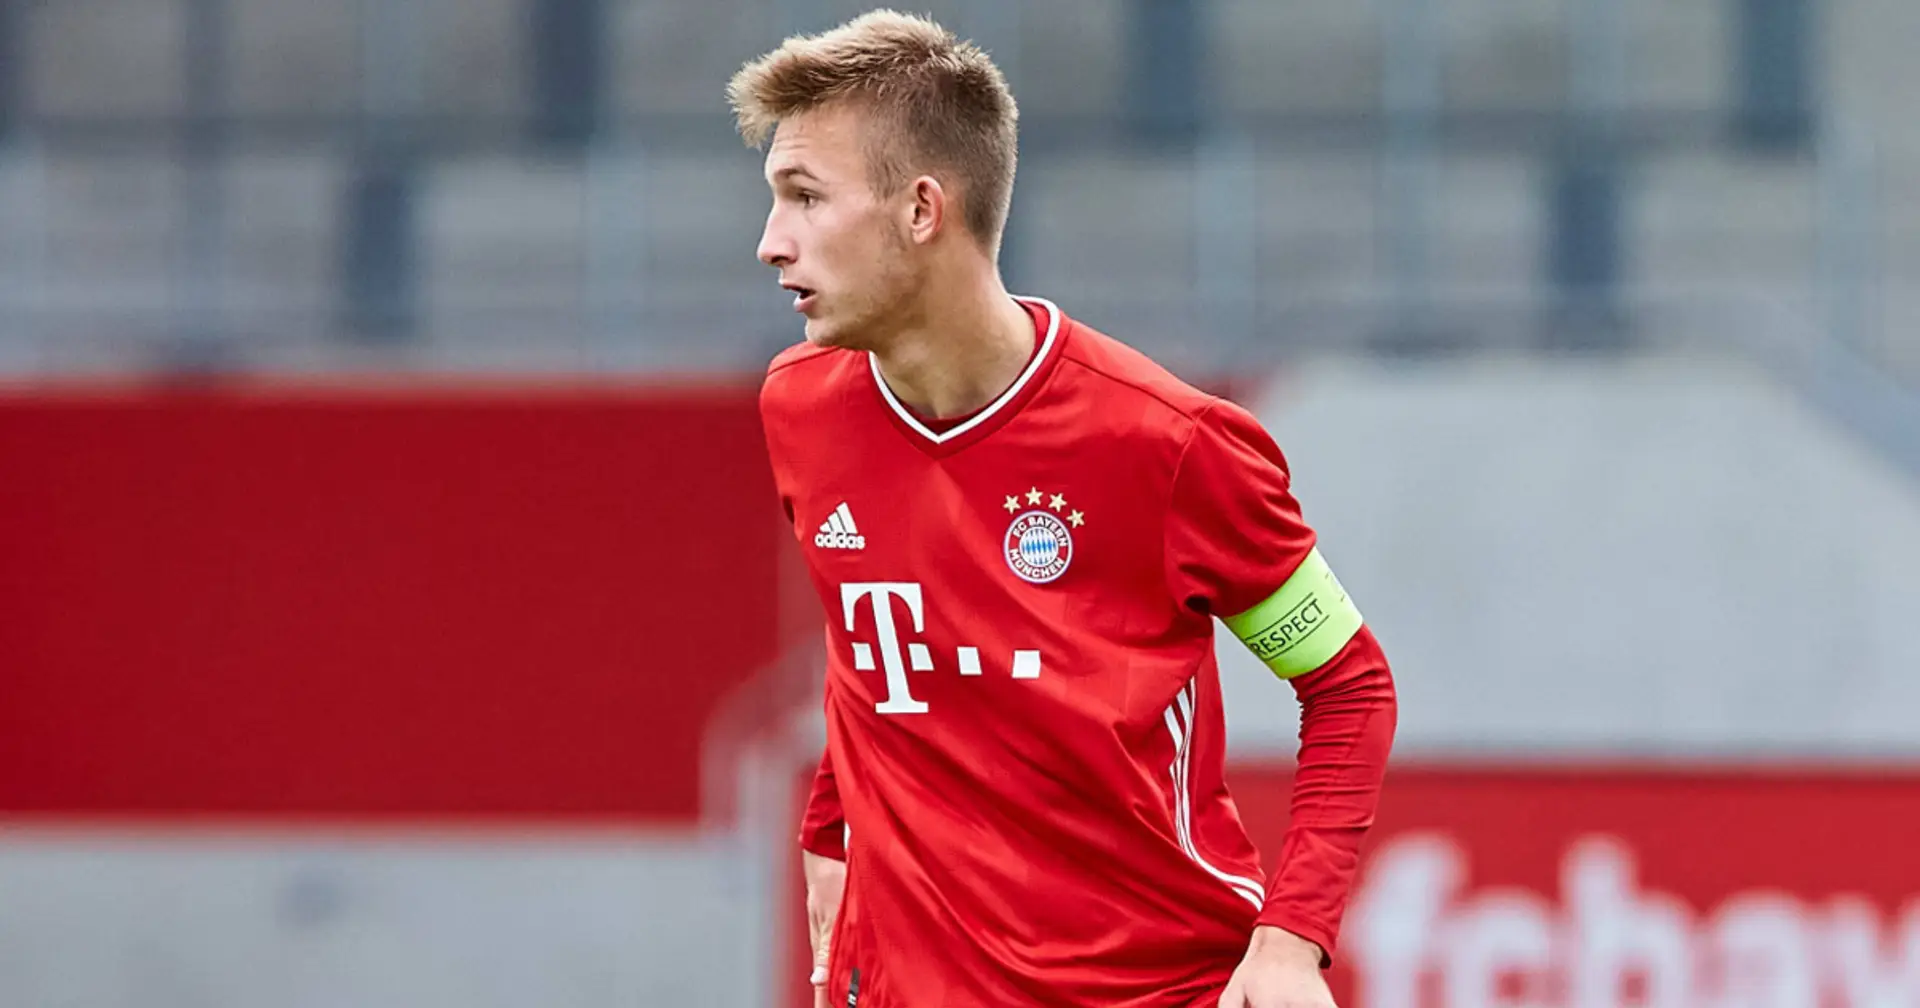 Torben Rhein wünscht sich das Debüt für Bayern, aber will sich dabei nicht beeilen